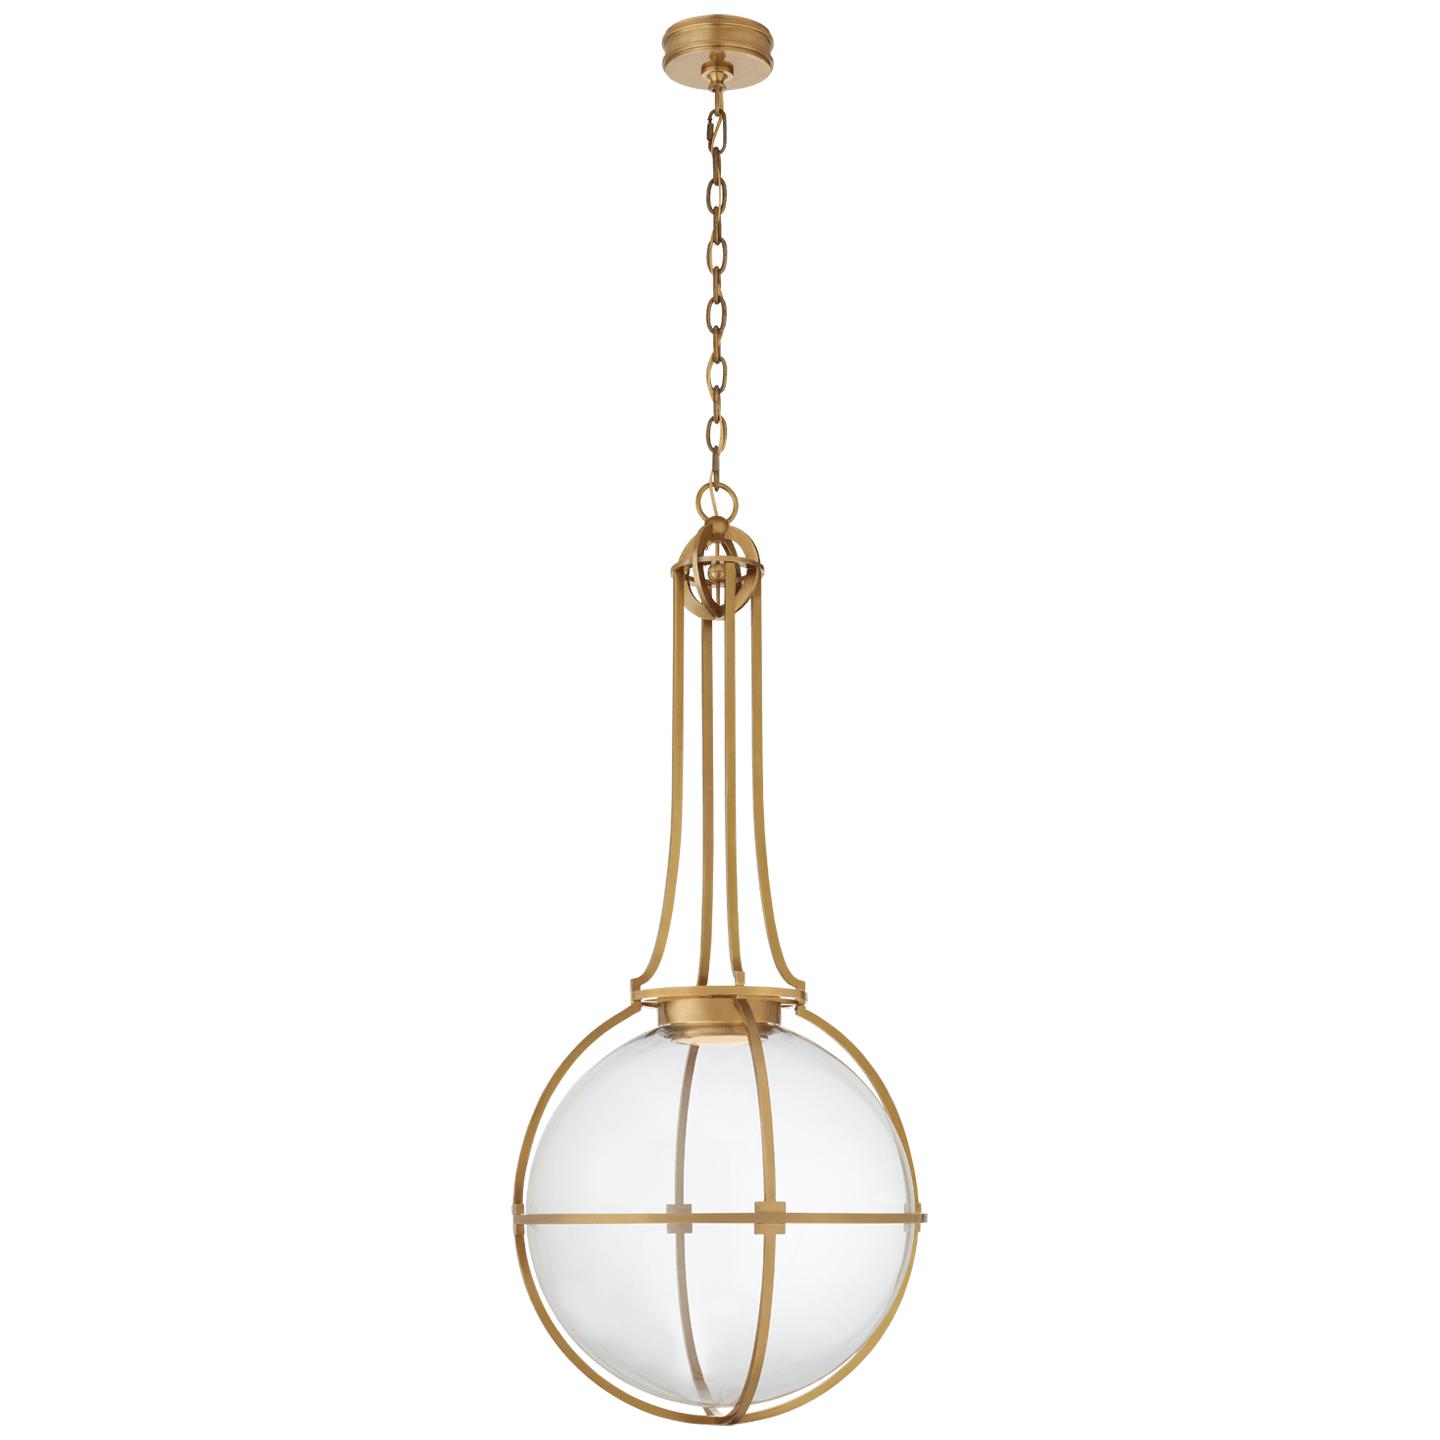 Купить Подвесной светильник Gracie Grande Captured Globe Pendant в интернет-магазине roooms.ru